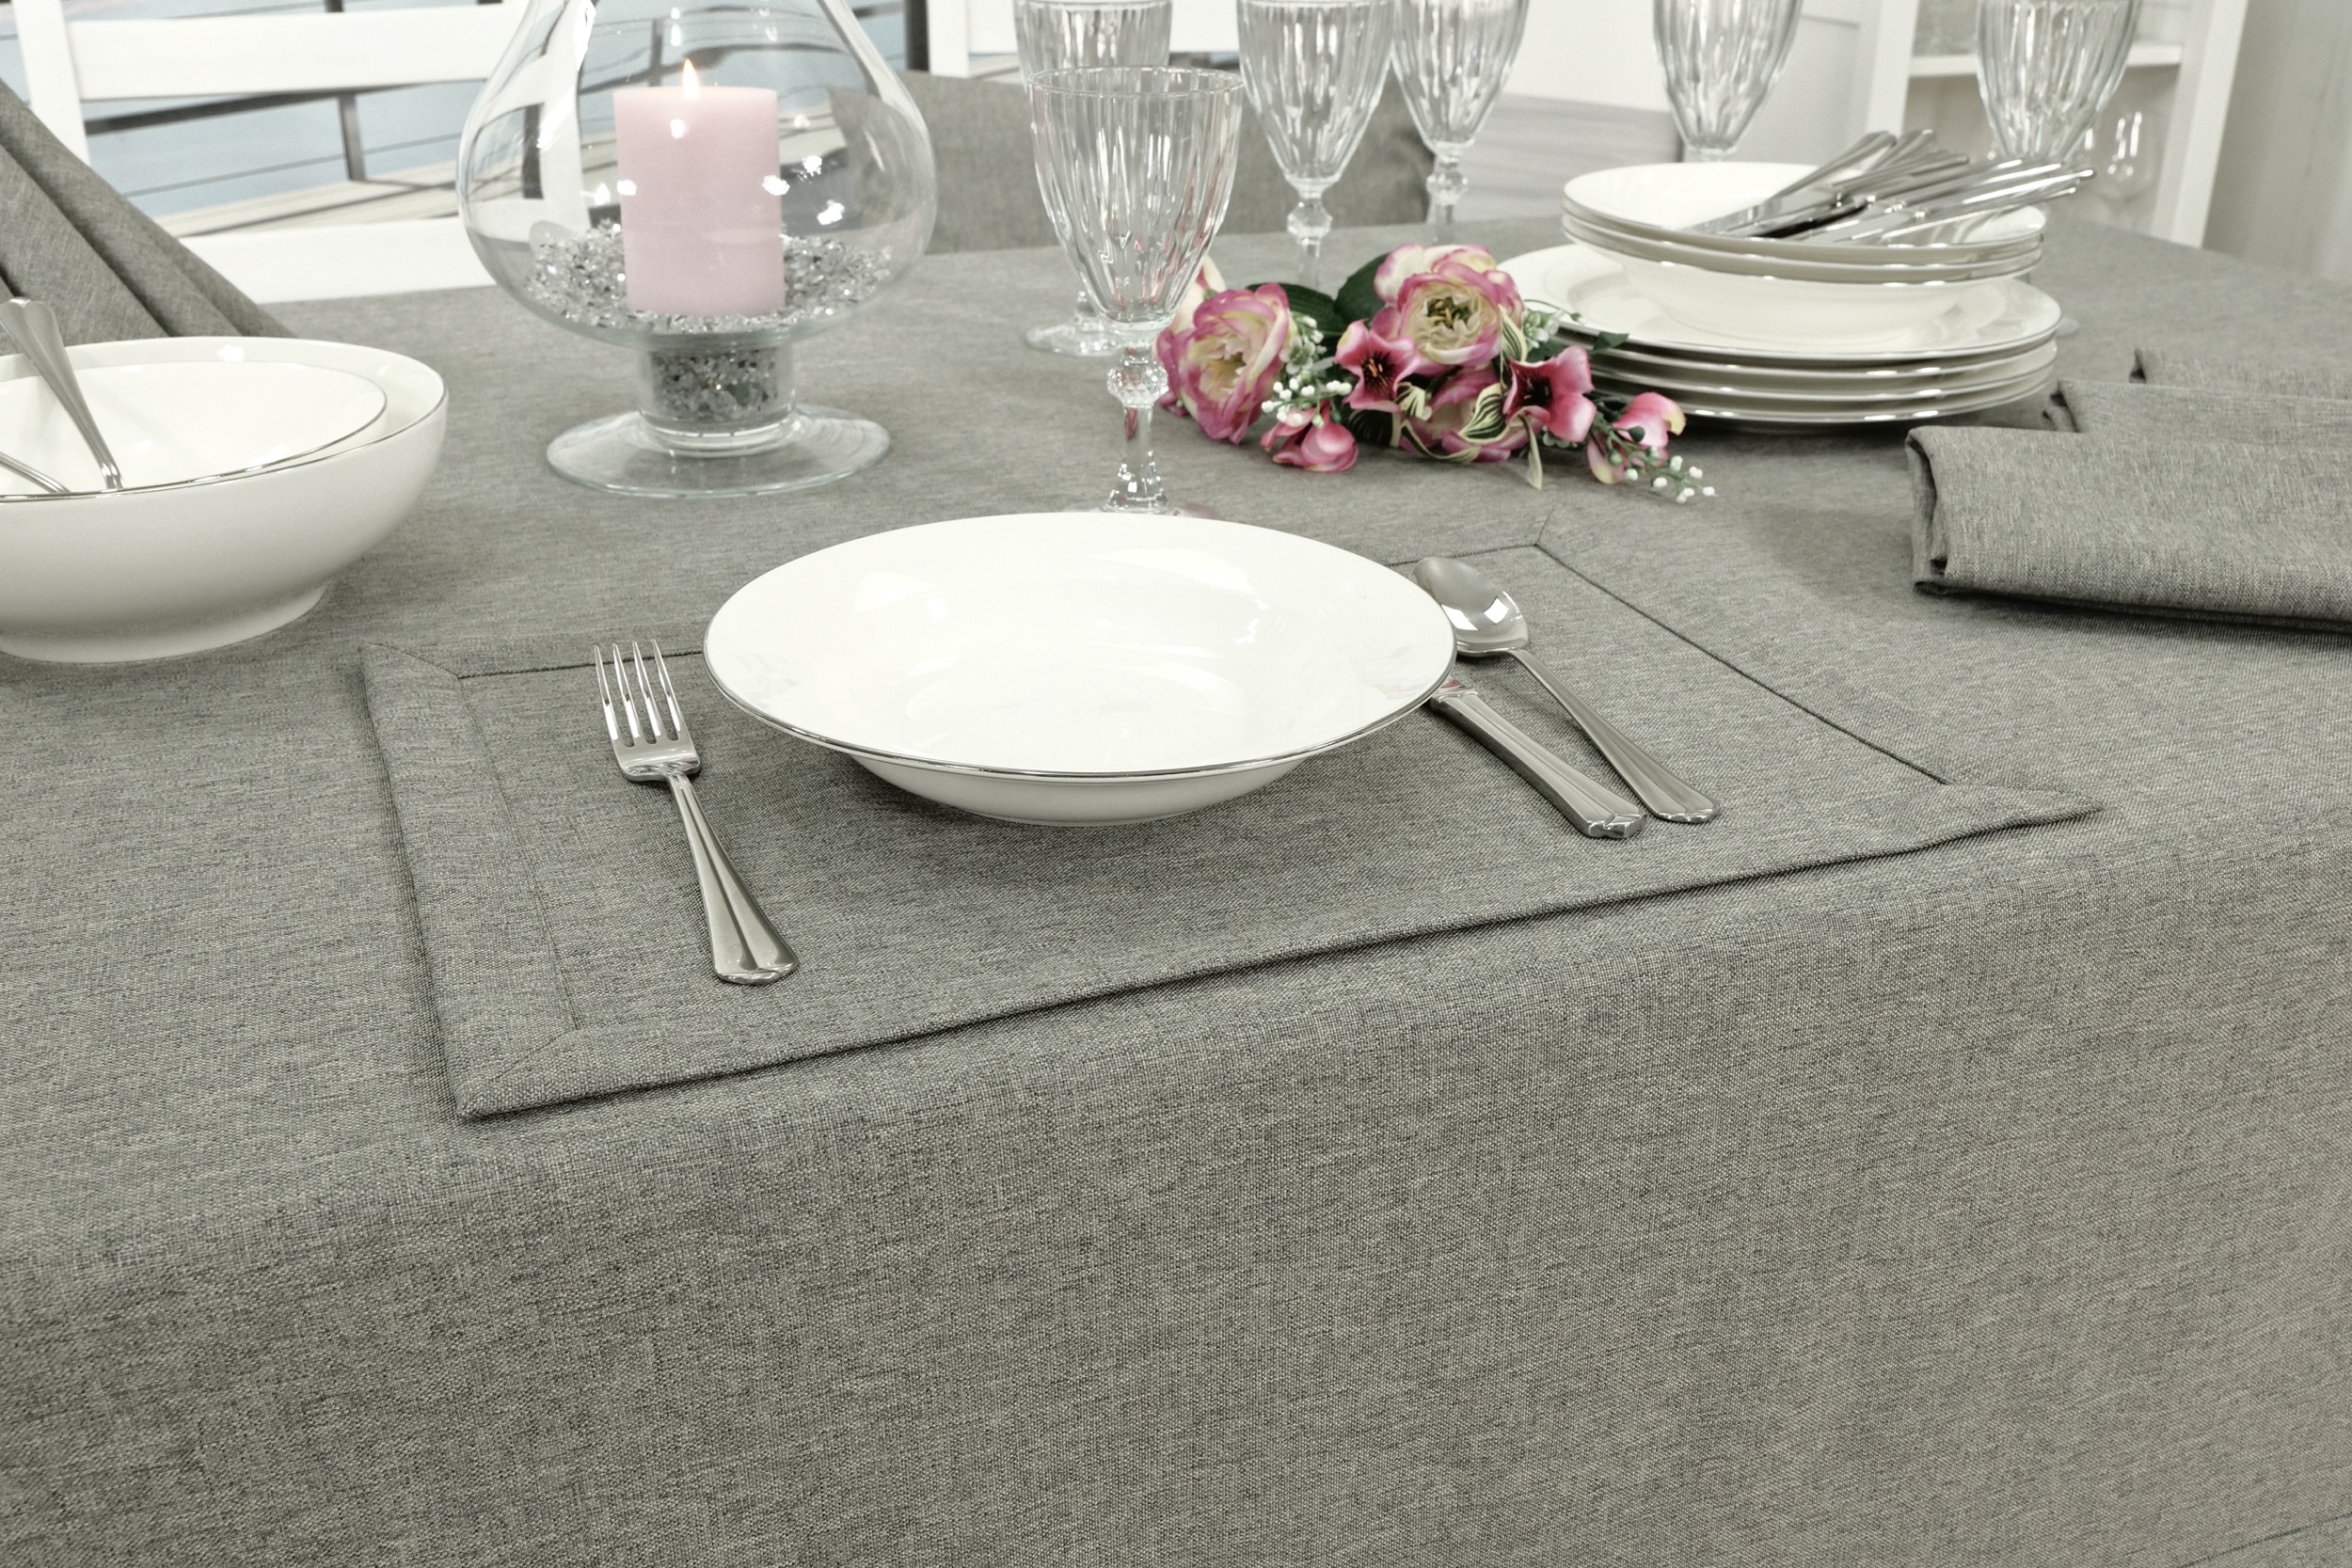 Edle Tischdecke Grau einfarbig Peony Breite 90 cm